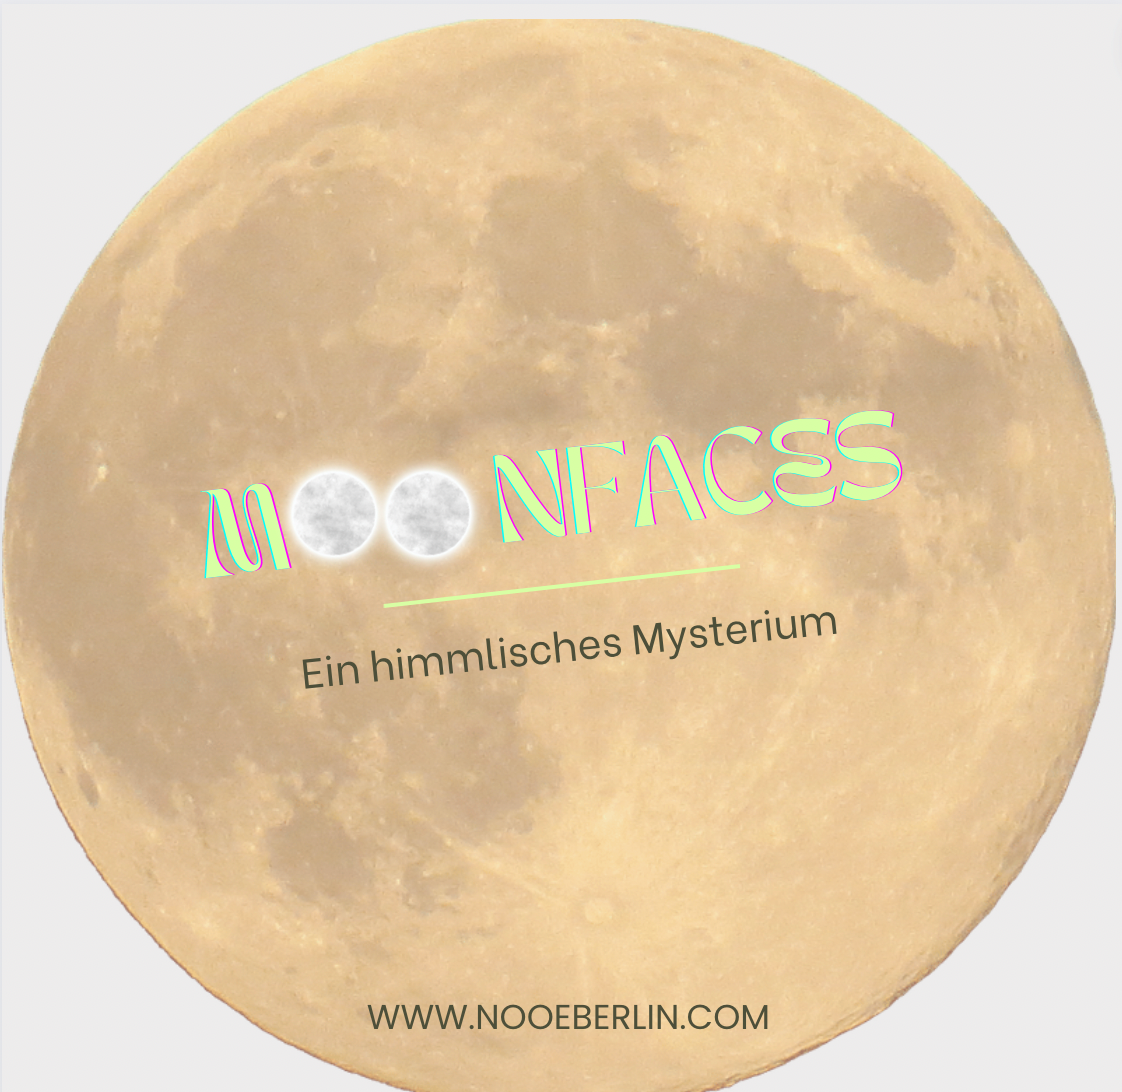 Moon faces - Ein himmlisches Mysterium